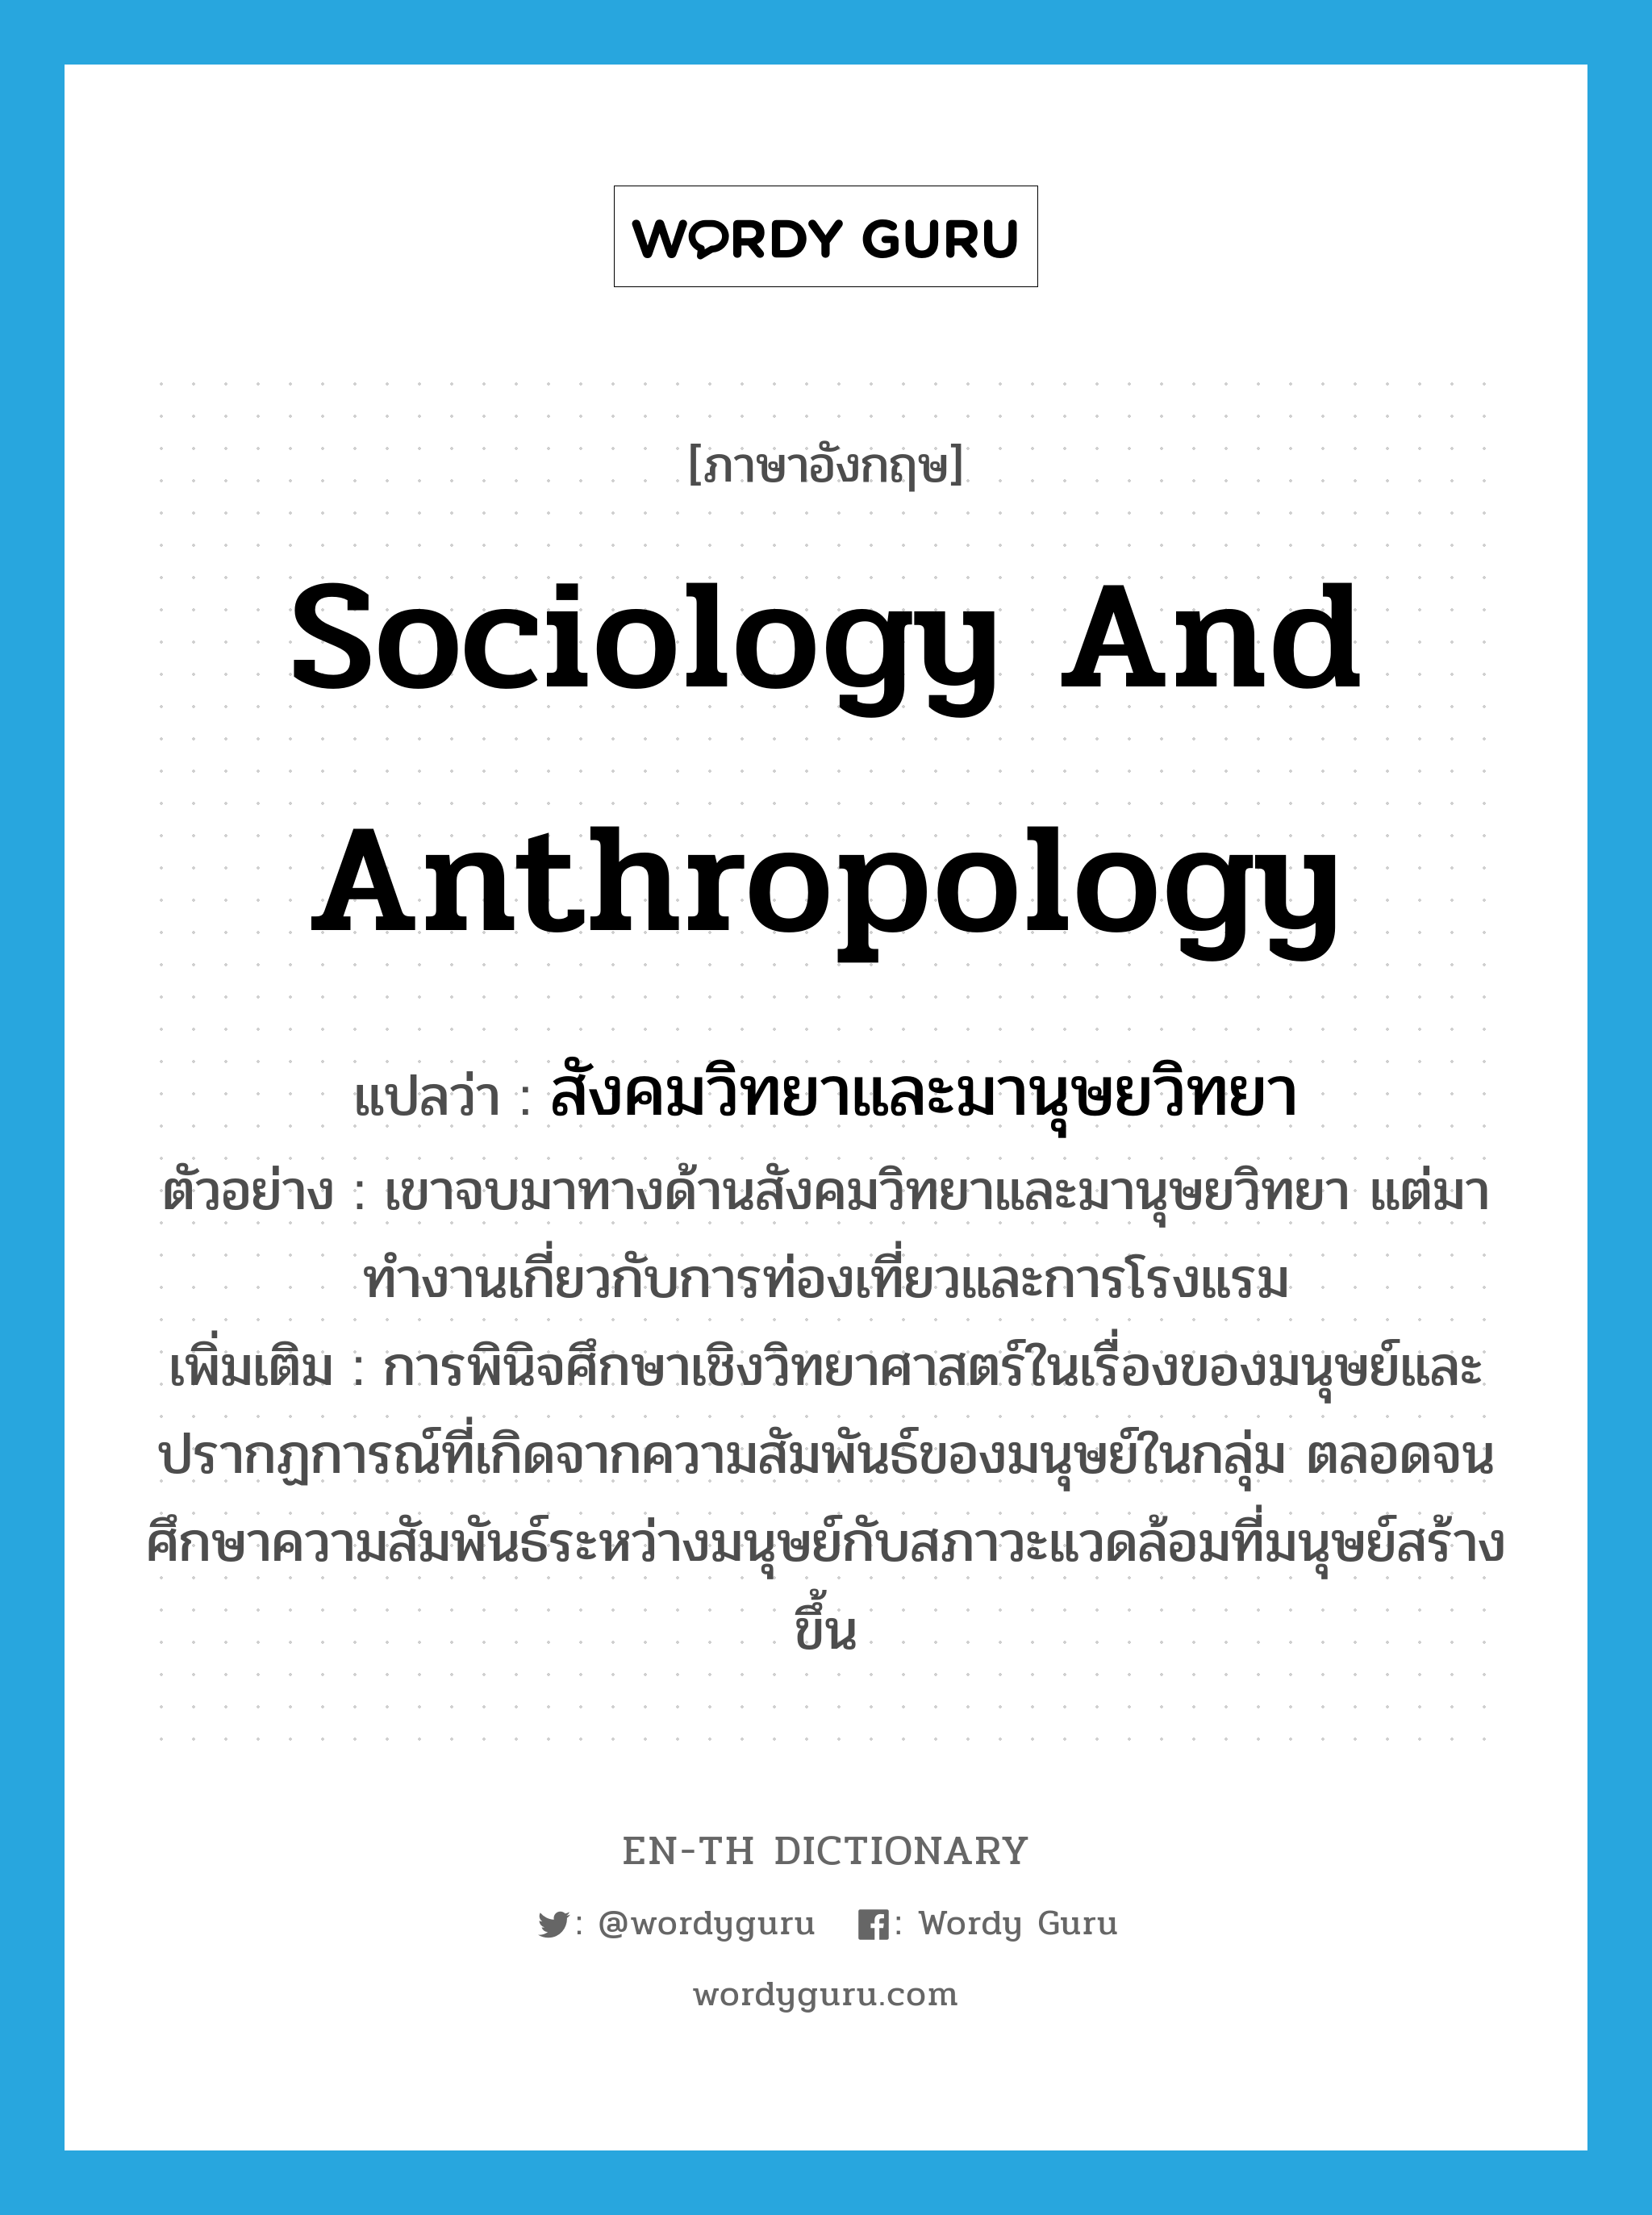 สังคมวิทยาและมานุษยวิทยา ภาษาอังกฤษ?, คำศัพท์ภาษาอังกฤษ สังคมวิทยาและมานุษยวิทยา แปลว่า sociology and anthropology ประเภท N ตัวอย่าง เขาจบมาทางด้านสังคมวิทยาและมานุษยวิทยา แต่มาทำงานเกี่ยวกับการท่องเที่ยวและการโรงแรม เพิ่มเติม การพินิจศึกษาเชิงวิทยาศาสตร์ในเรื่องของมนุษย์และปรากฏการณ์ที่เกิดจากความสัมพันธ์ของมนุษย์ในกลุ่ม ตลอดจนศึกษาความสัมพันธ์ระหว่างมนุษย์กับสภาวะแวดล้อมที่มนุษย์สร้างขึ้น หมวด N